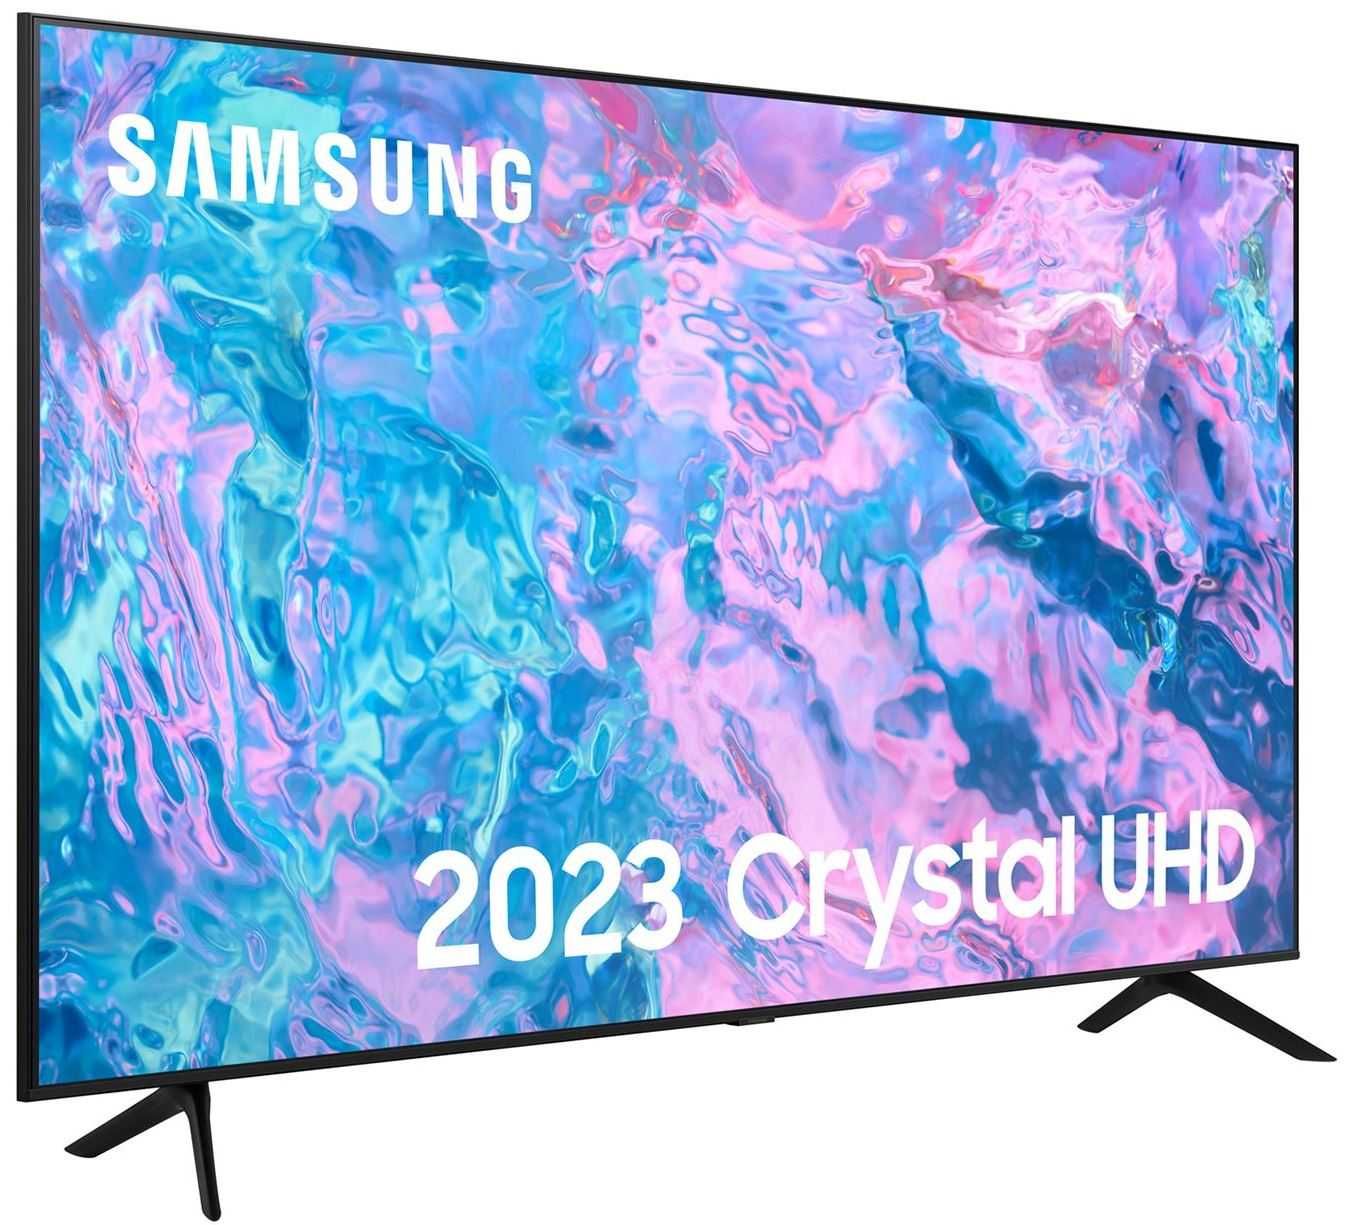 SAMSUNG NEW 2023 43CU7100 4K SMART TV по низкой цене+Доставка!!